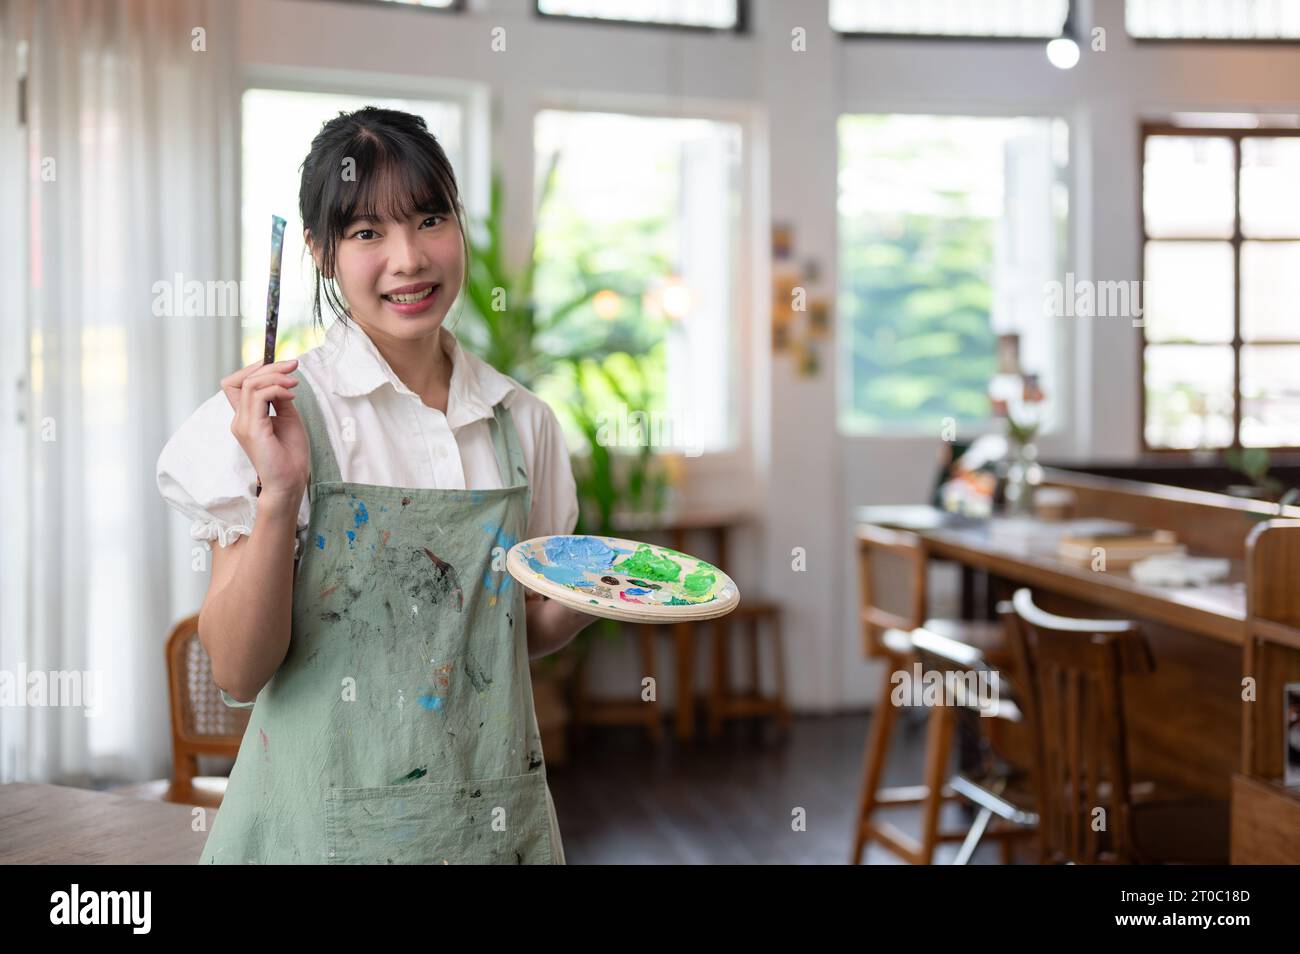 Ein Porträt einer charmanten und lächelnden jungen asiatischen Künstlerin in einer Schürze mit Pinsel und Farbpalette, die in ihrem Atelier steht. Cre Stockfoto